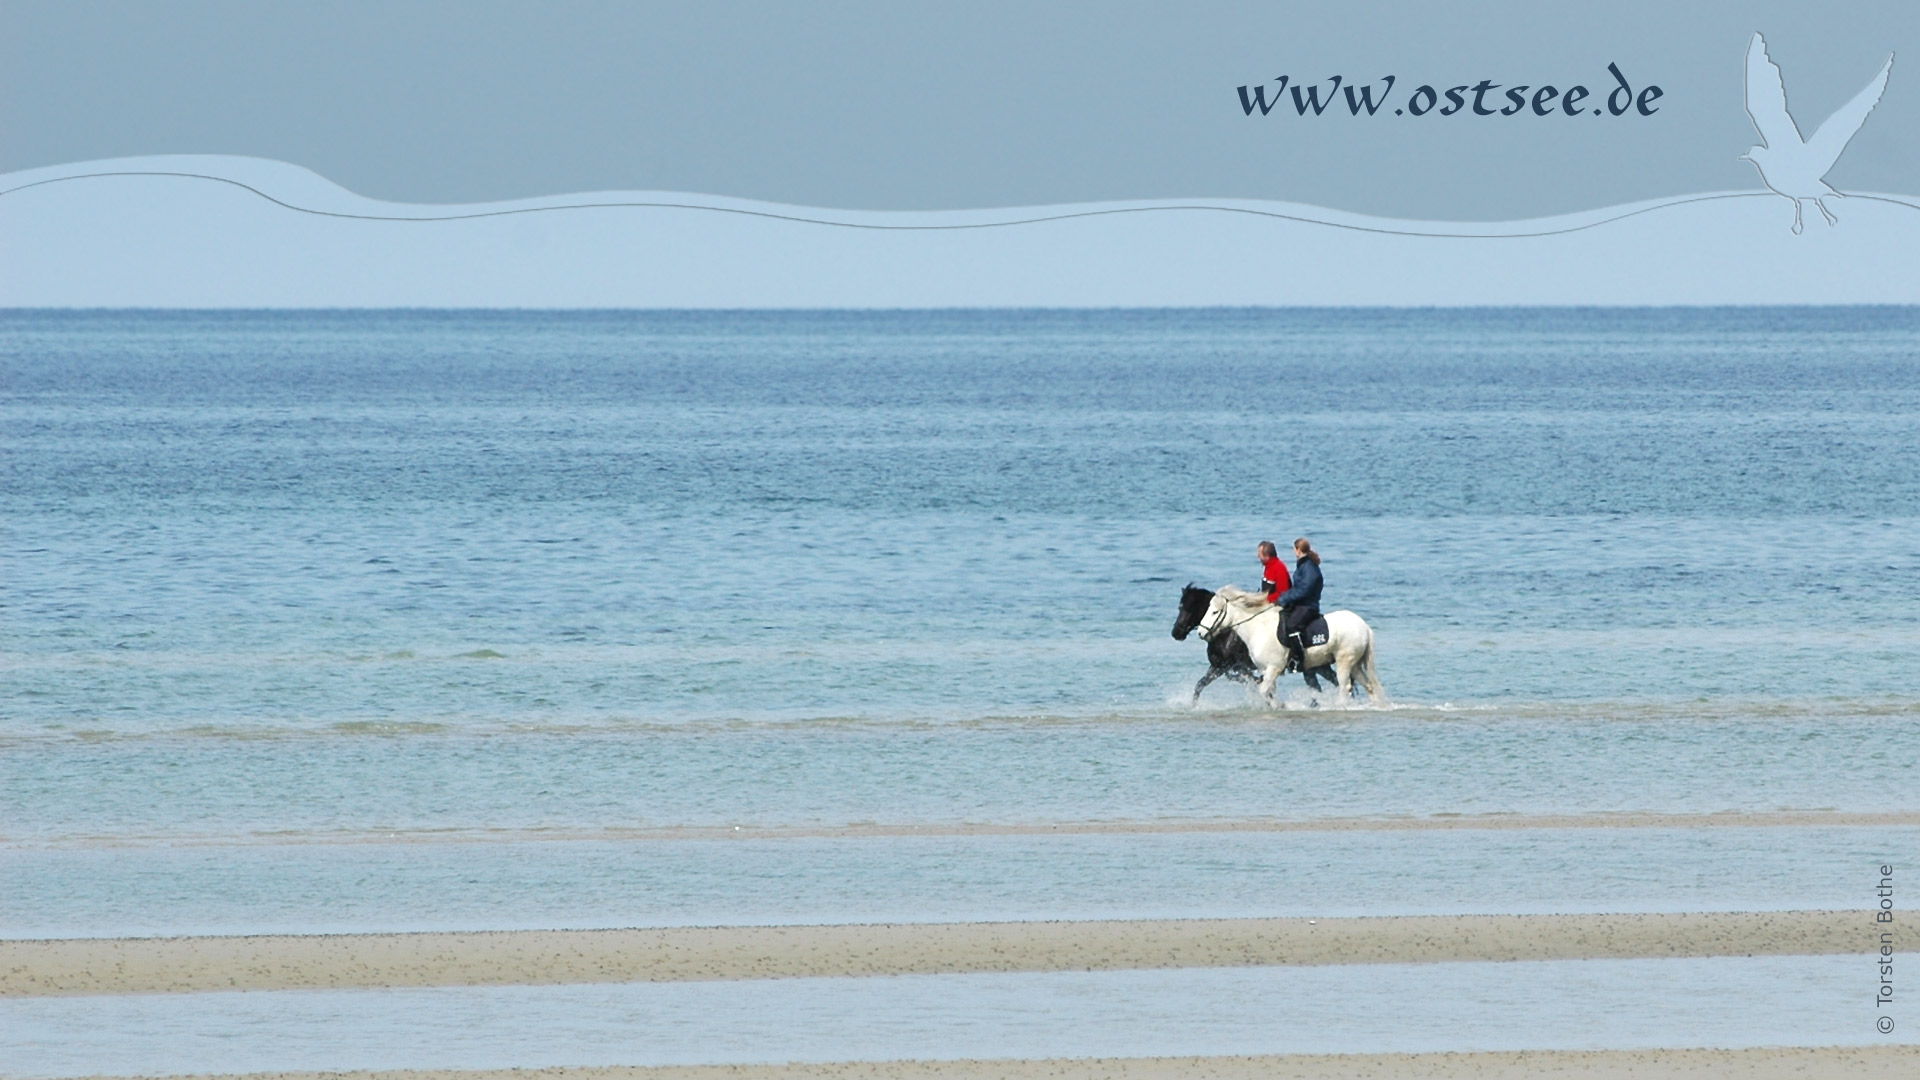 Hintergrundbild: Reiter in der Ostsee